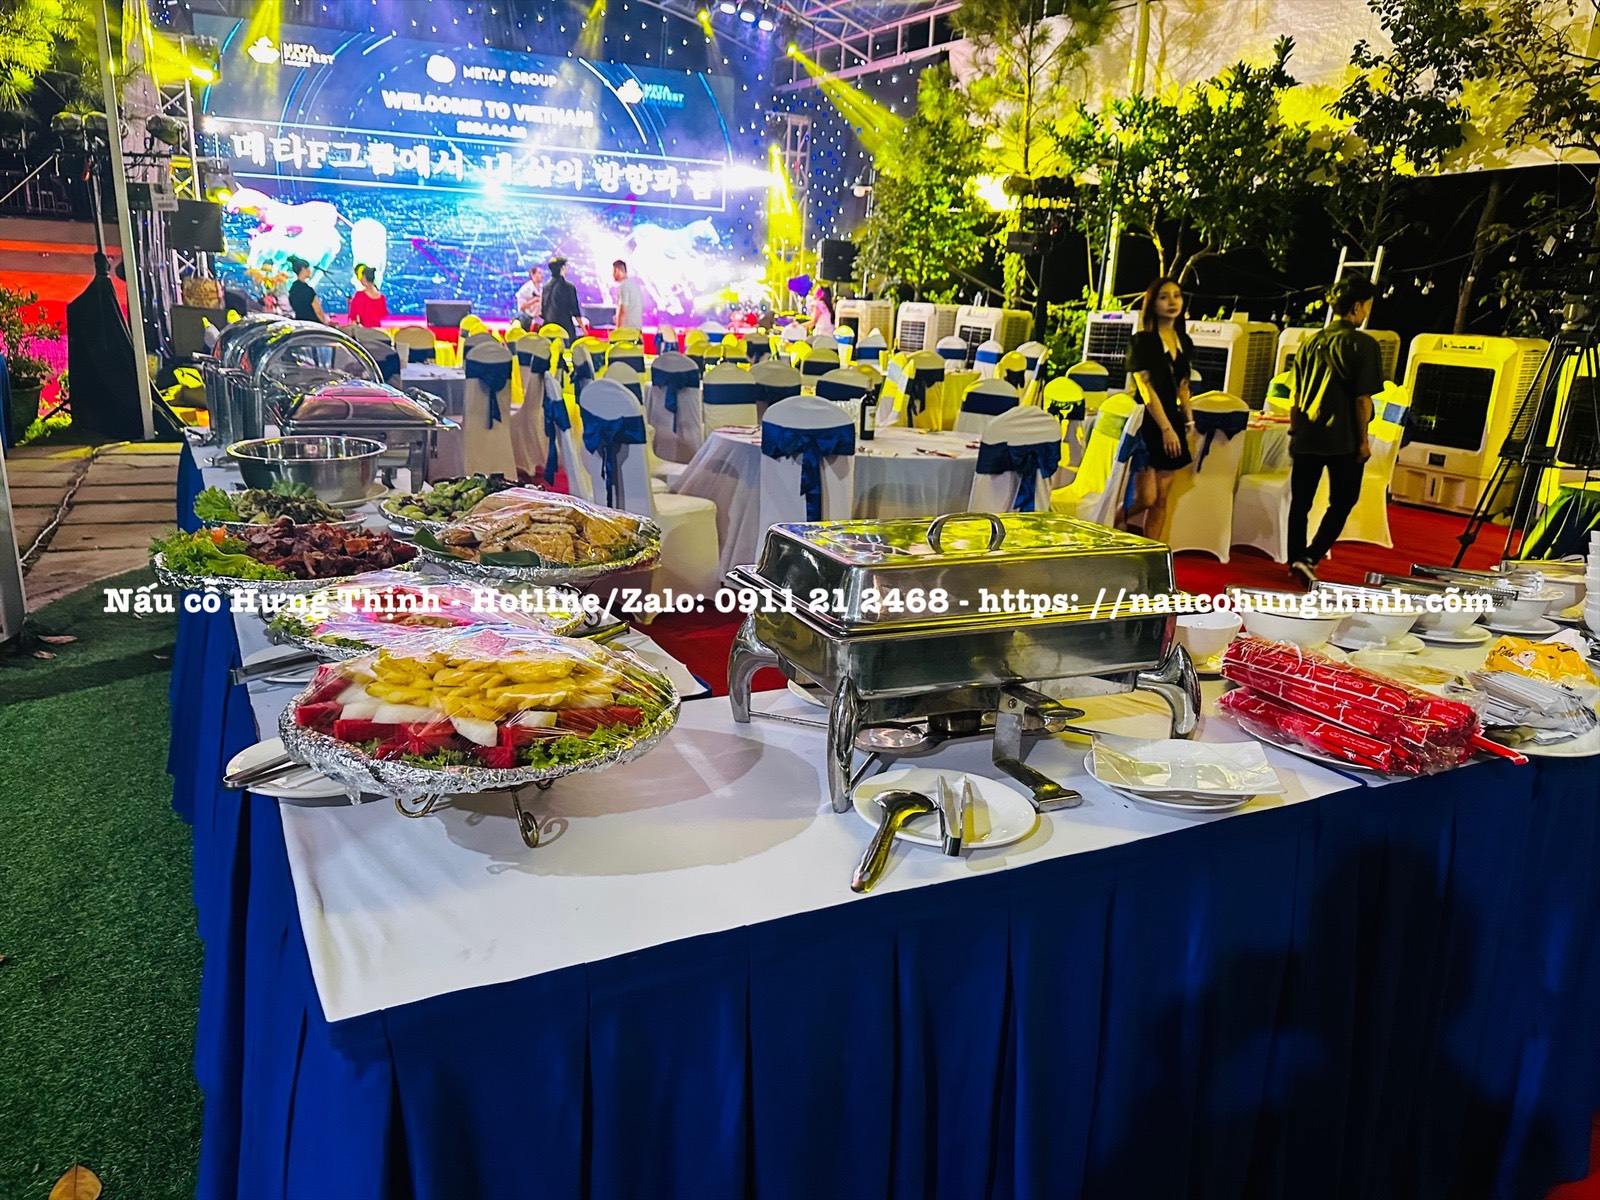 Tiệc Buffet cho người Hàn tại Villa Sóc Sơn| Tiệc Hưng Thịnh – Chuyên Tiệc Buffet